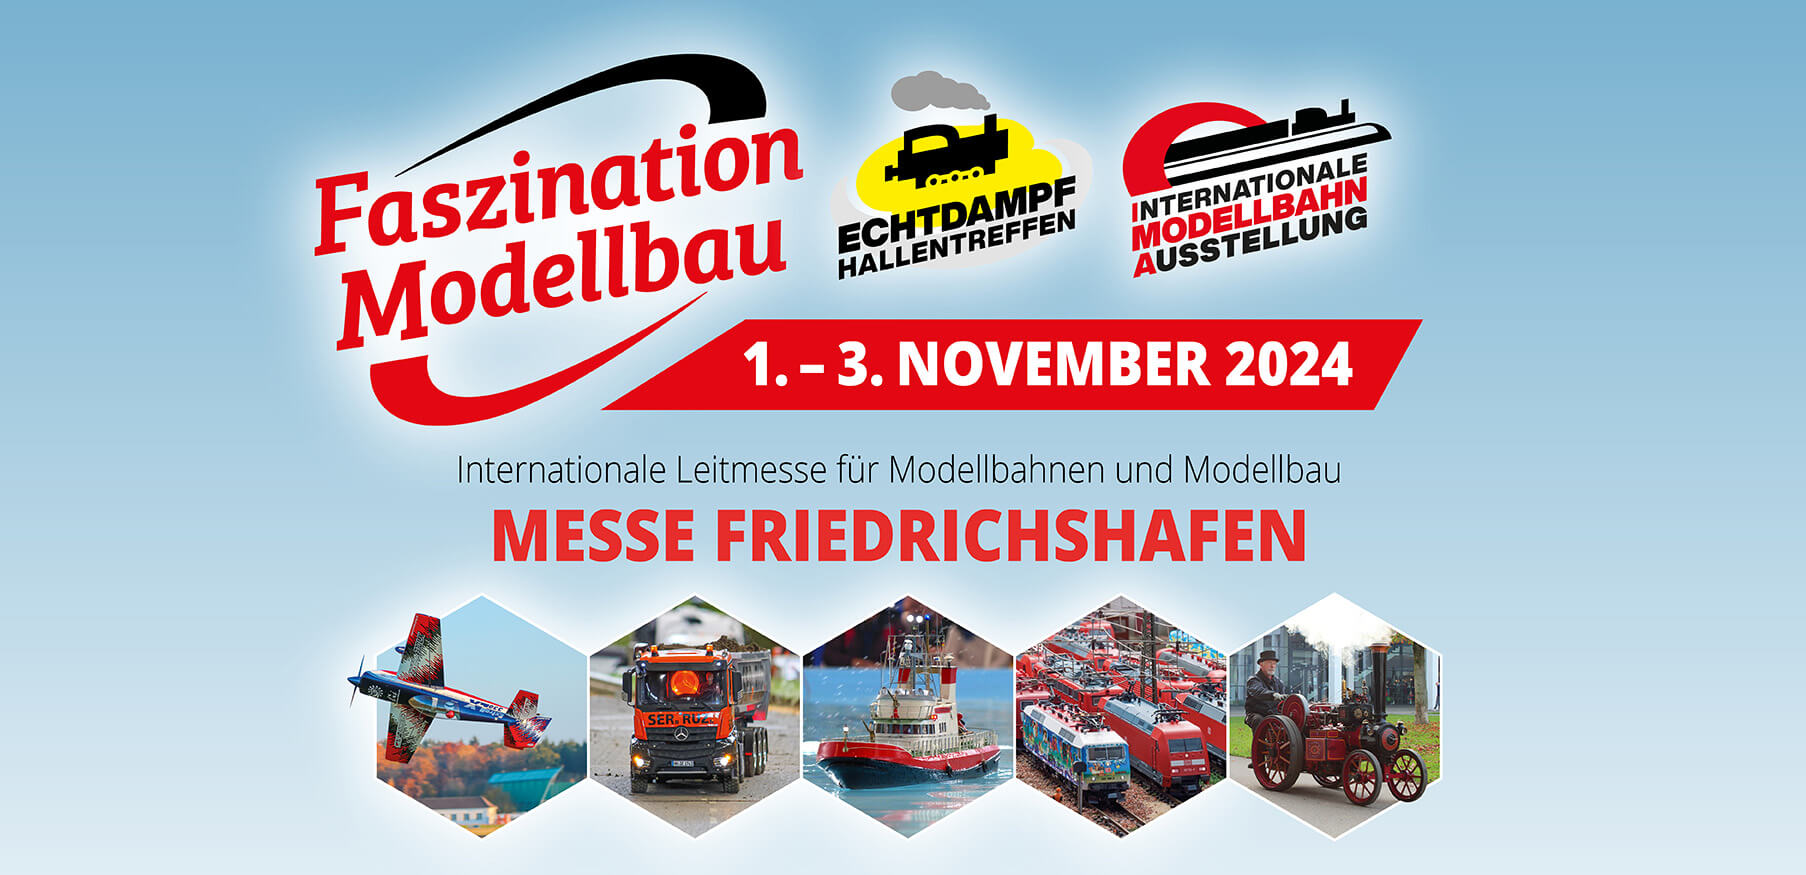 Faszination Modellbau Internationale Leitmesse für Modellbahnen und Modellbau Header FN2024 1806 x 875